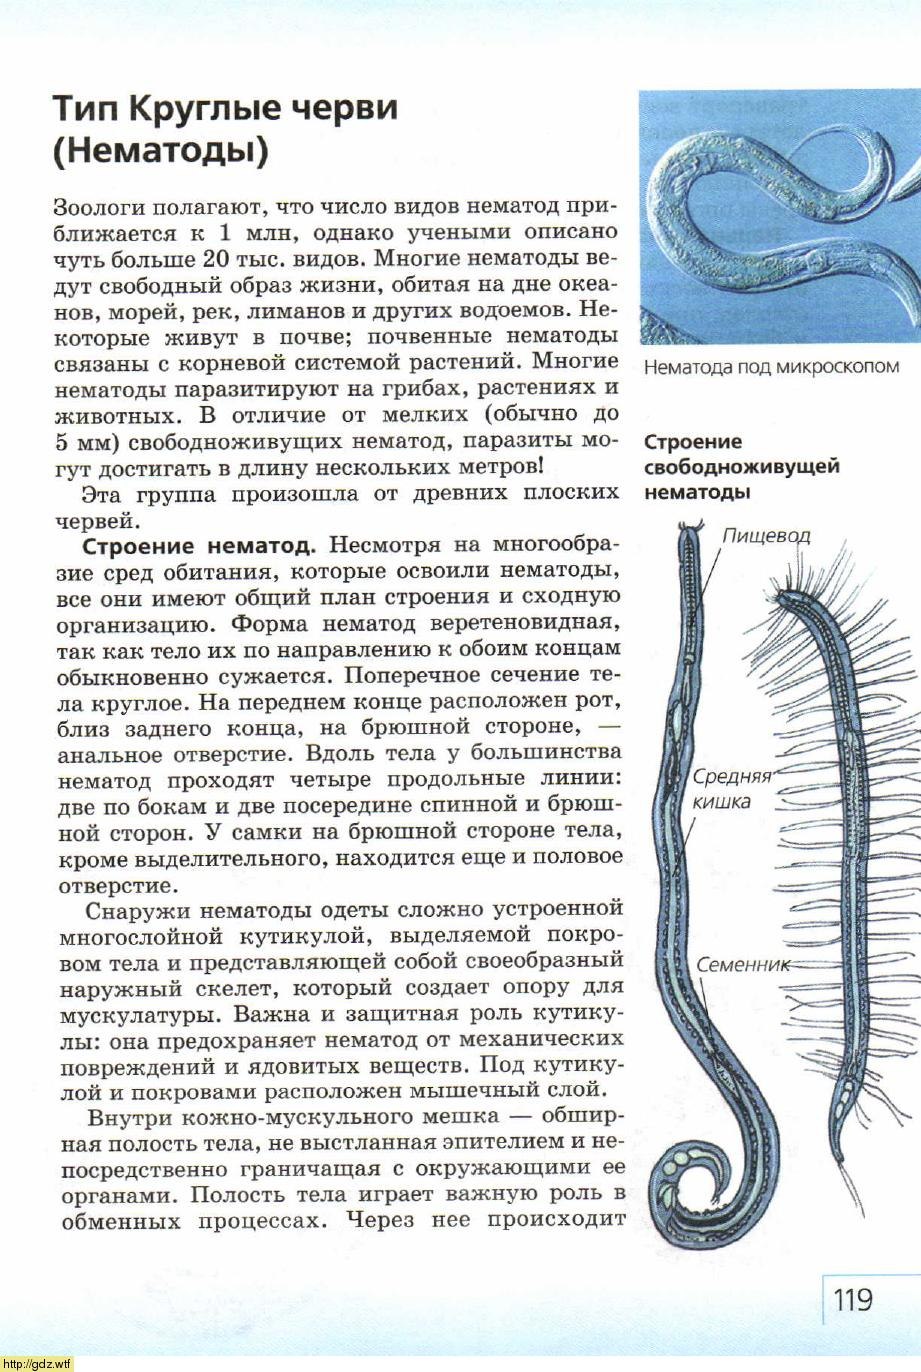 Усложнение червей. Тип круглые черви нематоды 7 класс. Круглые черви строение 7 класс биология. Тип круглые черви класс нематоды 7 класс. Круглые черви нематоды половая система.